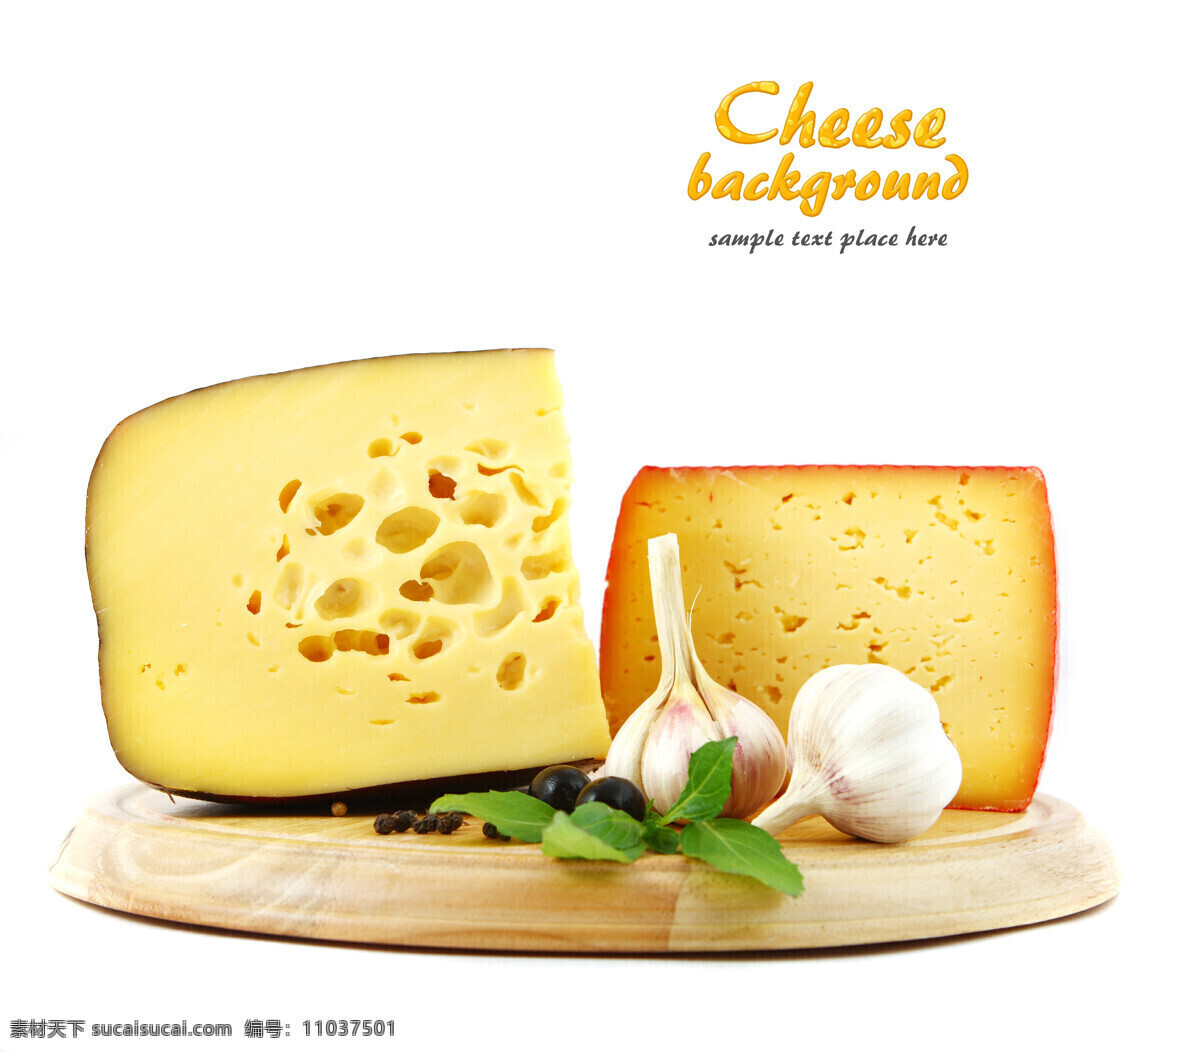 奶酪 乳酪 干酪 起司 芝士 点心 甜点 糕点 甜品 西餐甜点糕点 西餐美食 餐饮美食 高清图片